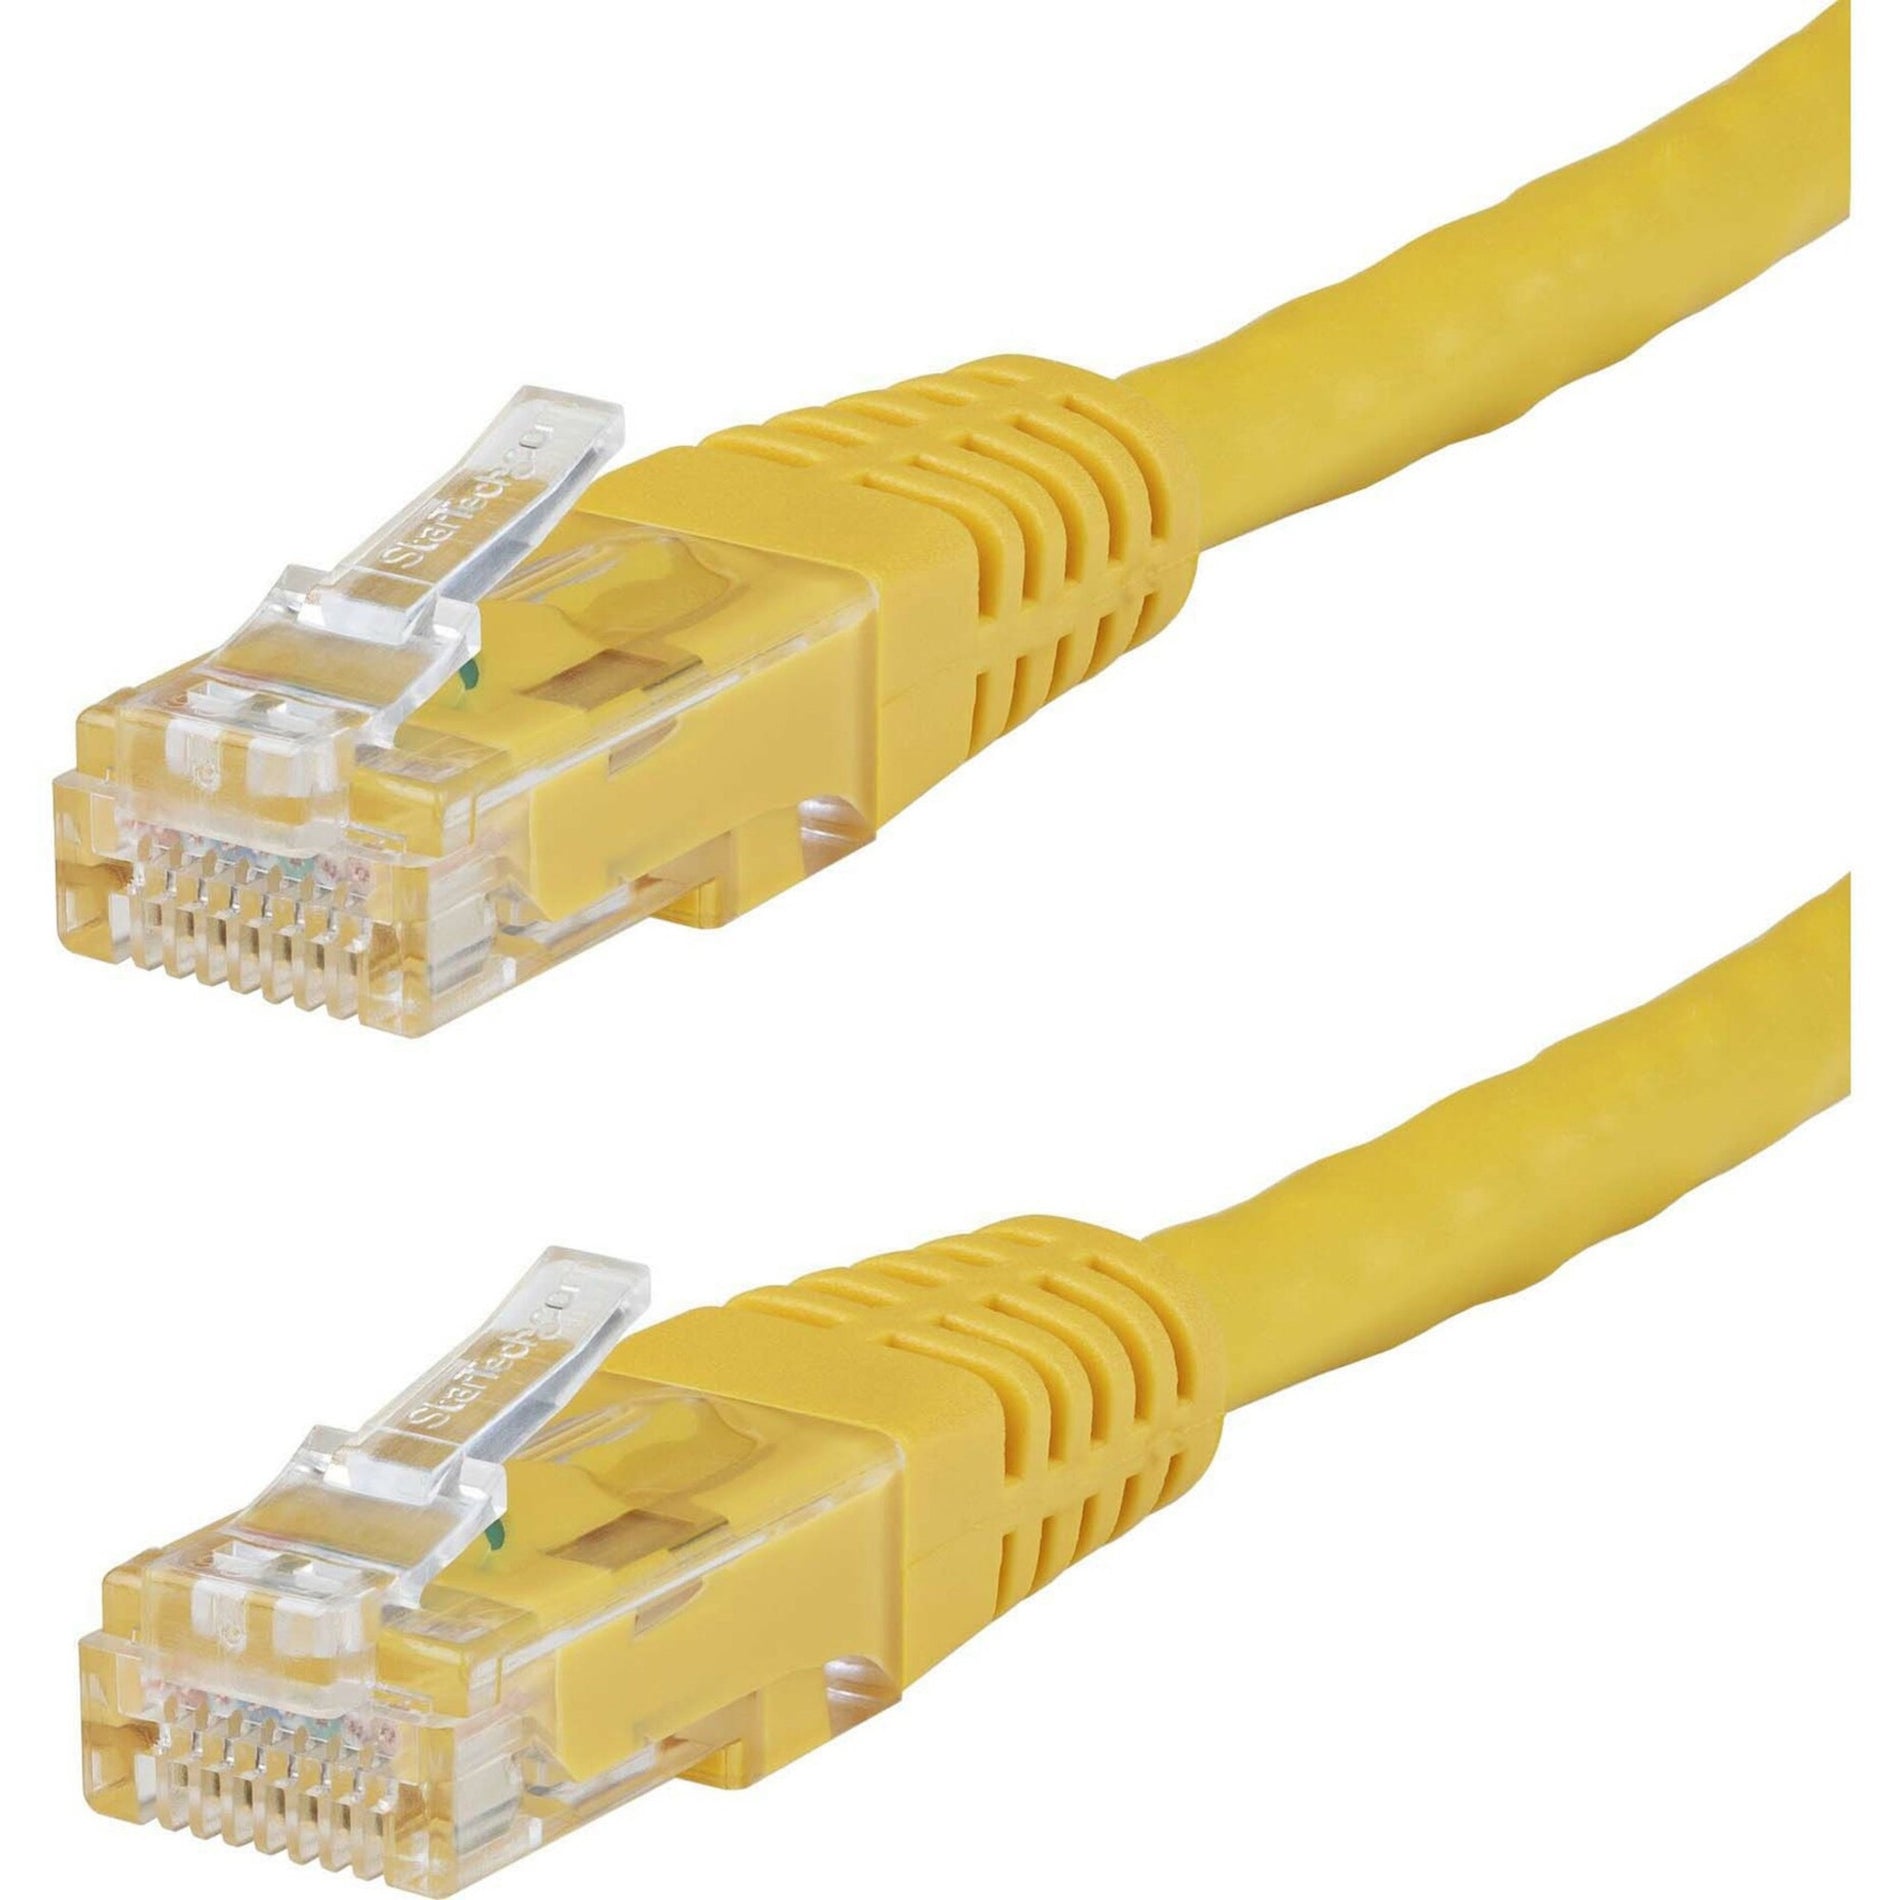 星际科技 C6PATCH15YL 15英尺 黄色 Cat6 UTP 补丁电缆 ETL 验证，10 Gbit/s 数据传输速率，镀金连接器 星际科技